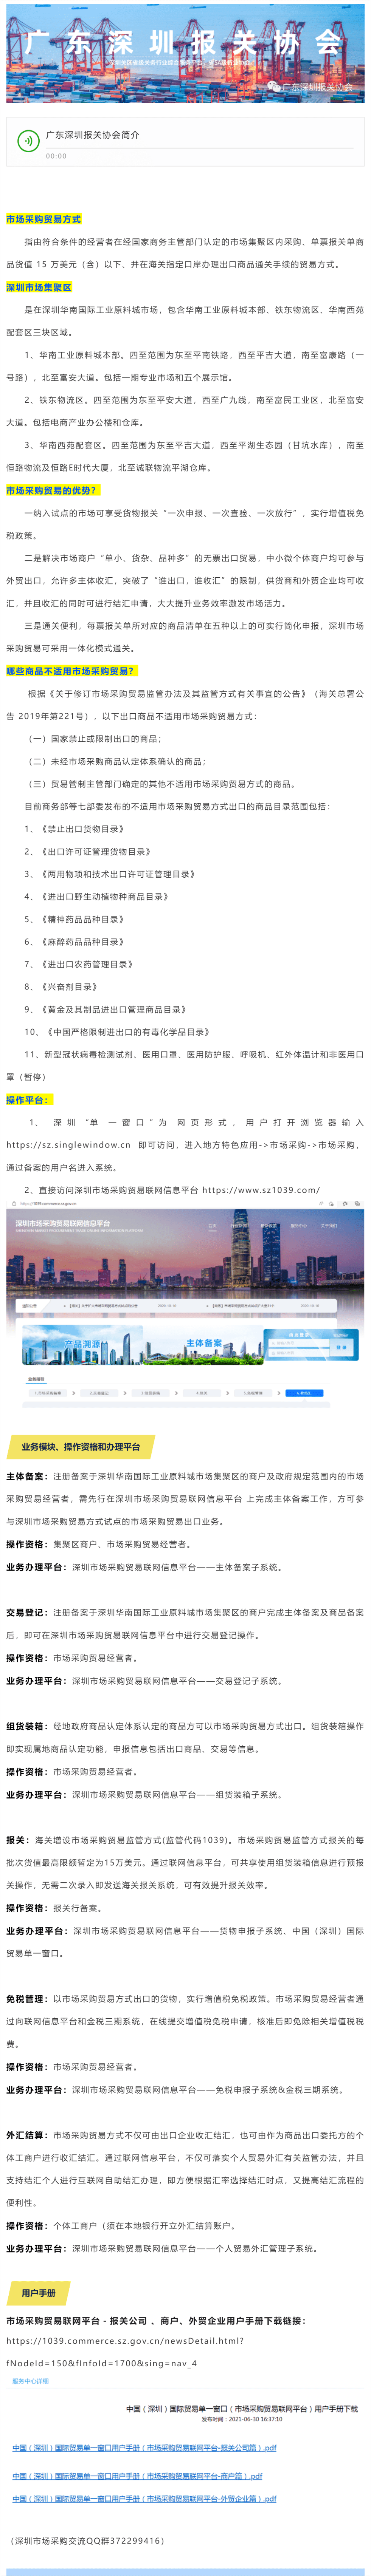 深圳市场采购业务指引_美编助手_pro.png